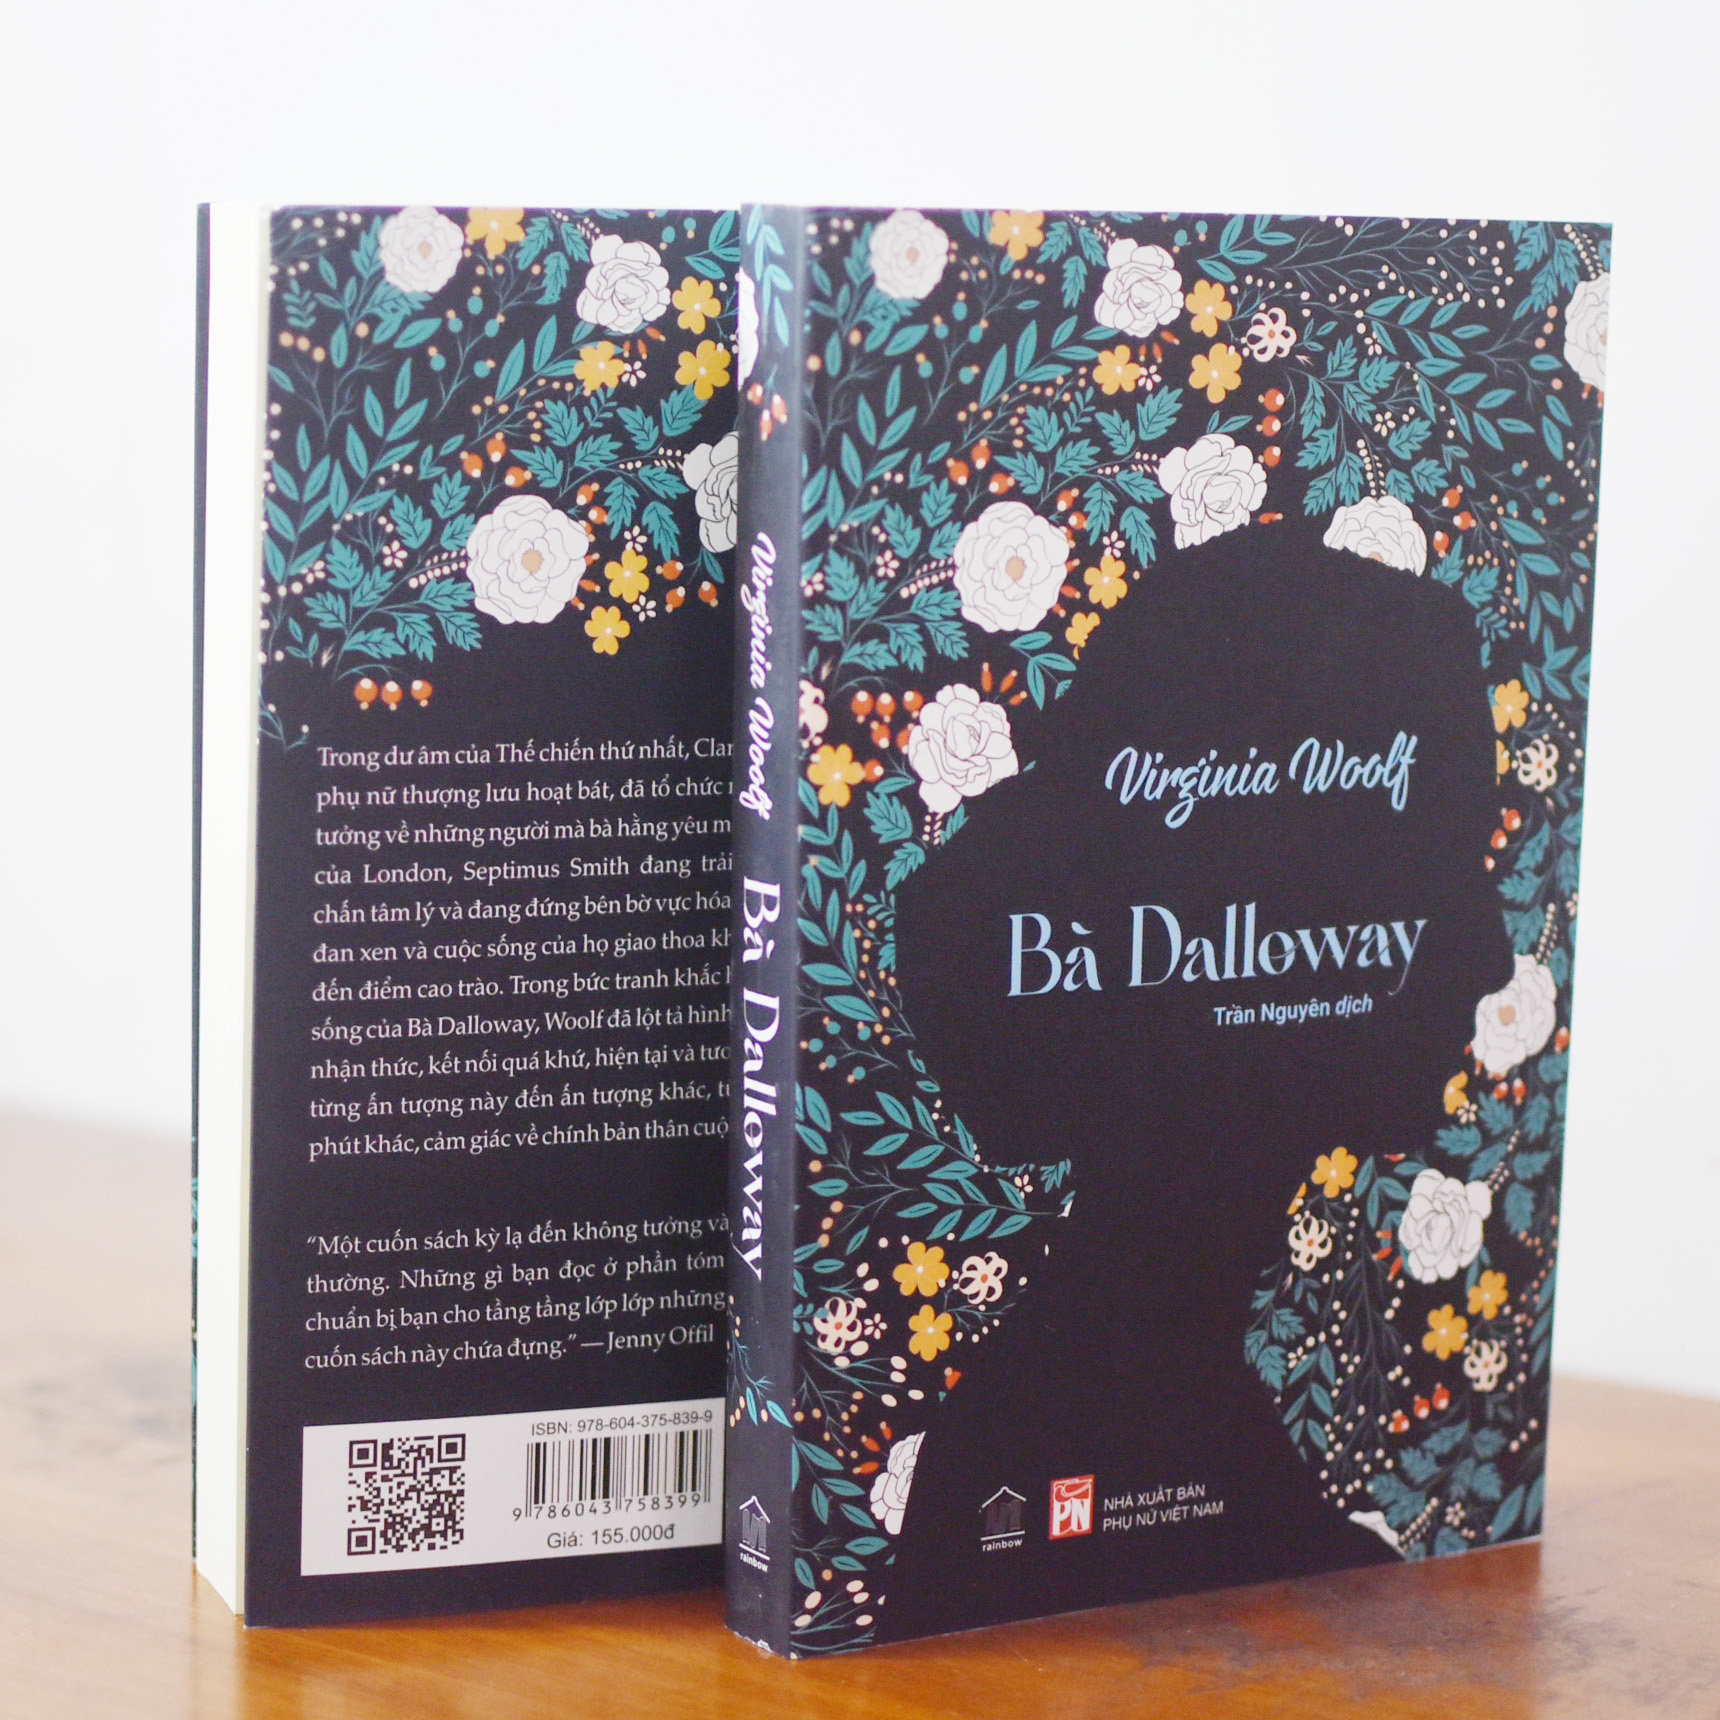 BÀ DALLOWAY (bản phổ thông bìa mềm) - RAINBOW BOOKS (Trần Nguyên dịch)